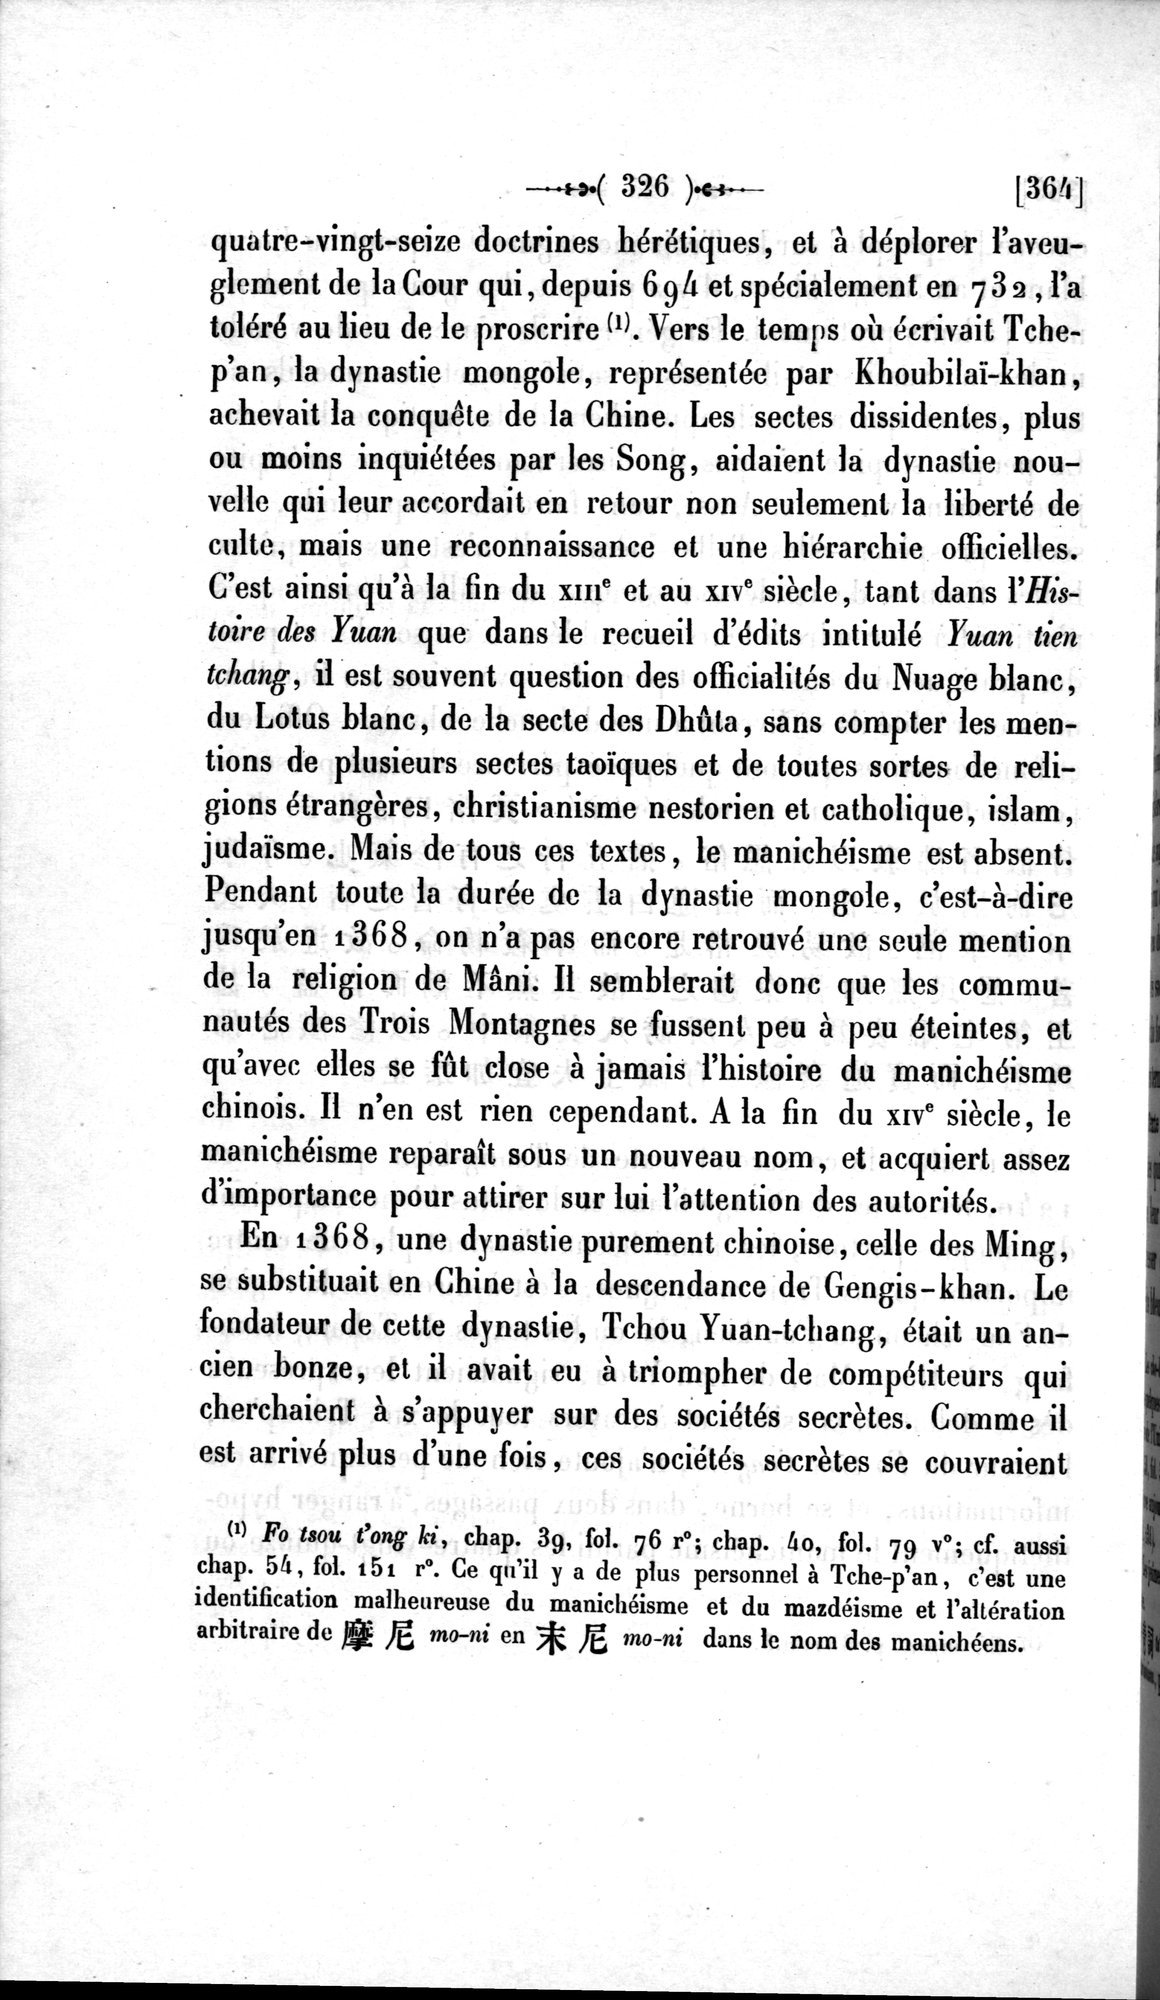 Un traité manichéen retrouvé en Chine : vol.1 / Page 336 (Grayscale High Resolution Image)